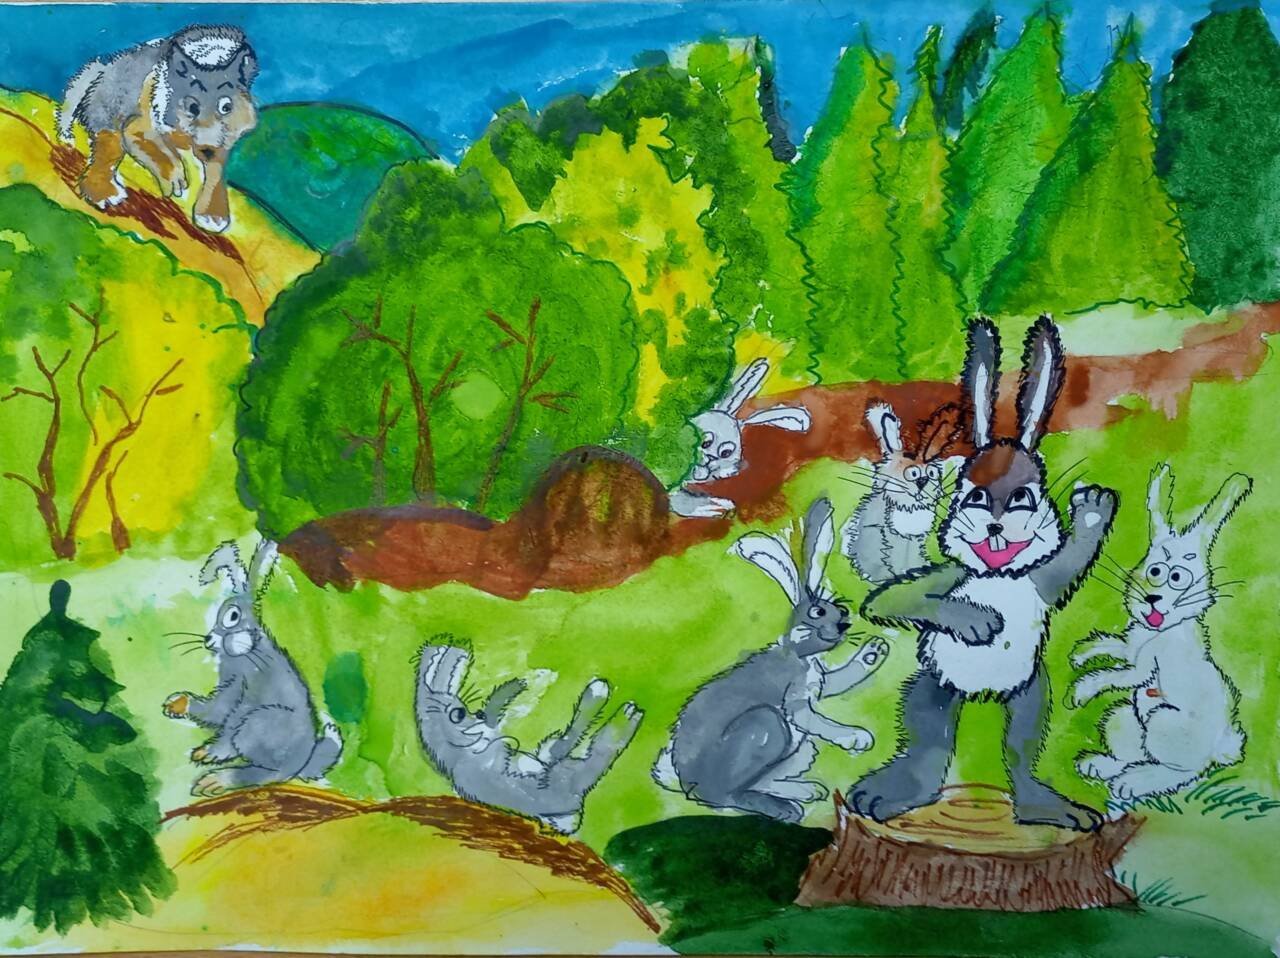 Про храброго зайца падеж. Храбрый заяц рисунок. Сказка про храброго зайца. Сказка про храброго зайца - длинные уши, косые глаза, короткий хвост.